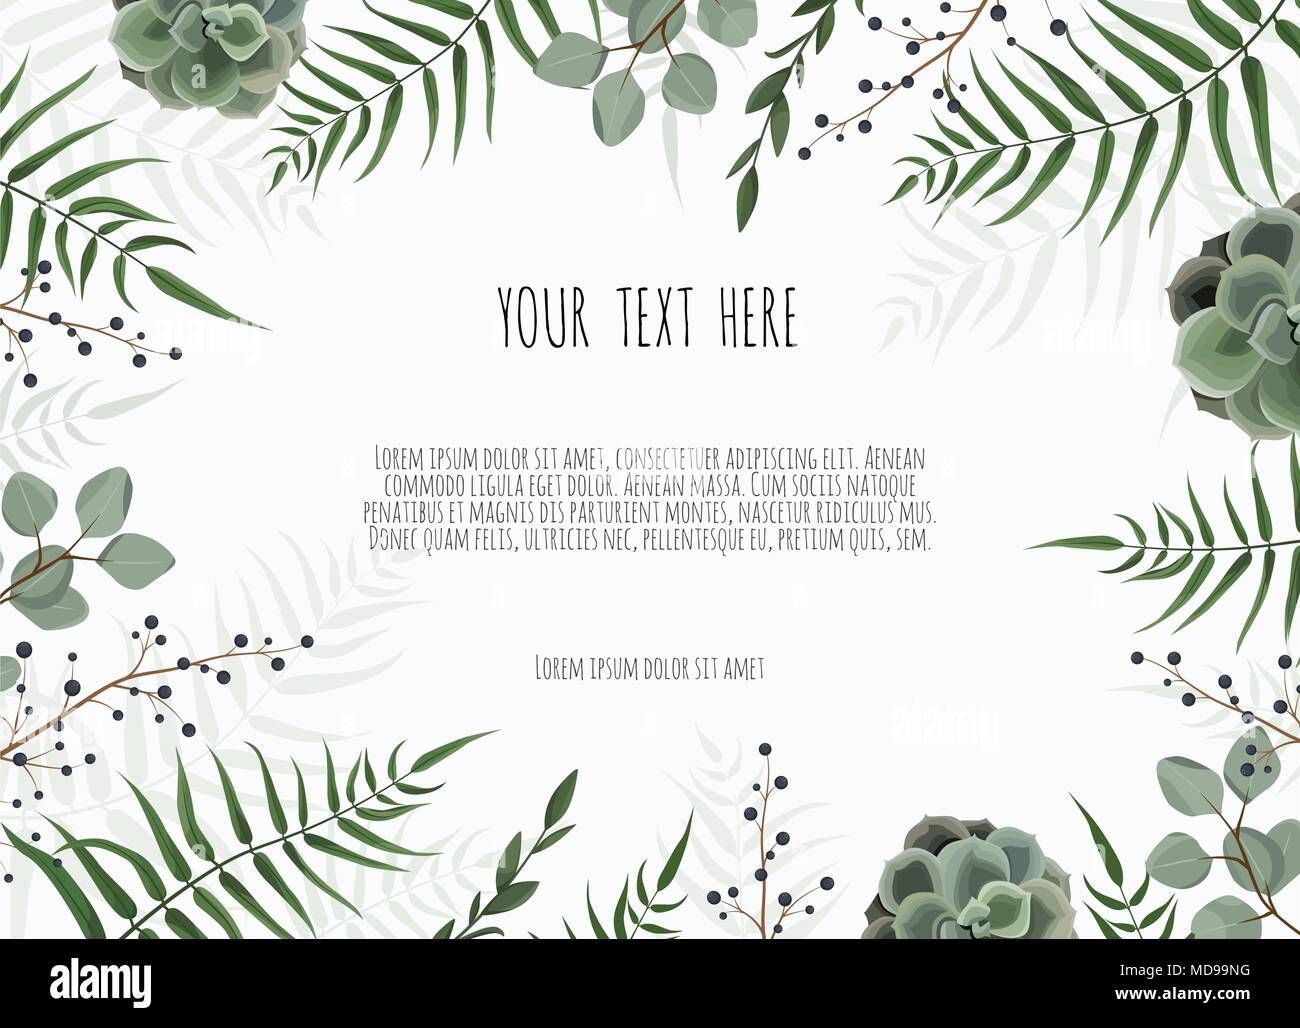 Hintergrund Mit Grunen Blattern Eukalyptus Zweige Dekorativen Kranz Rahmen Muster Stock Vektorgrafik Alamy